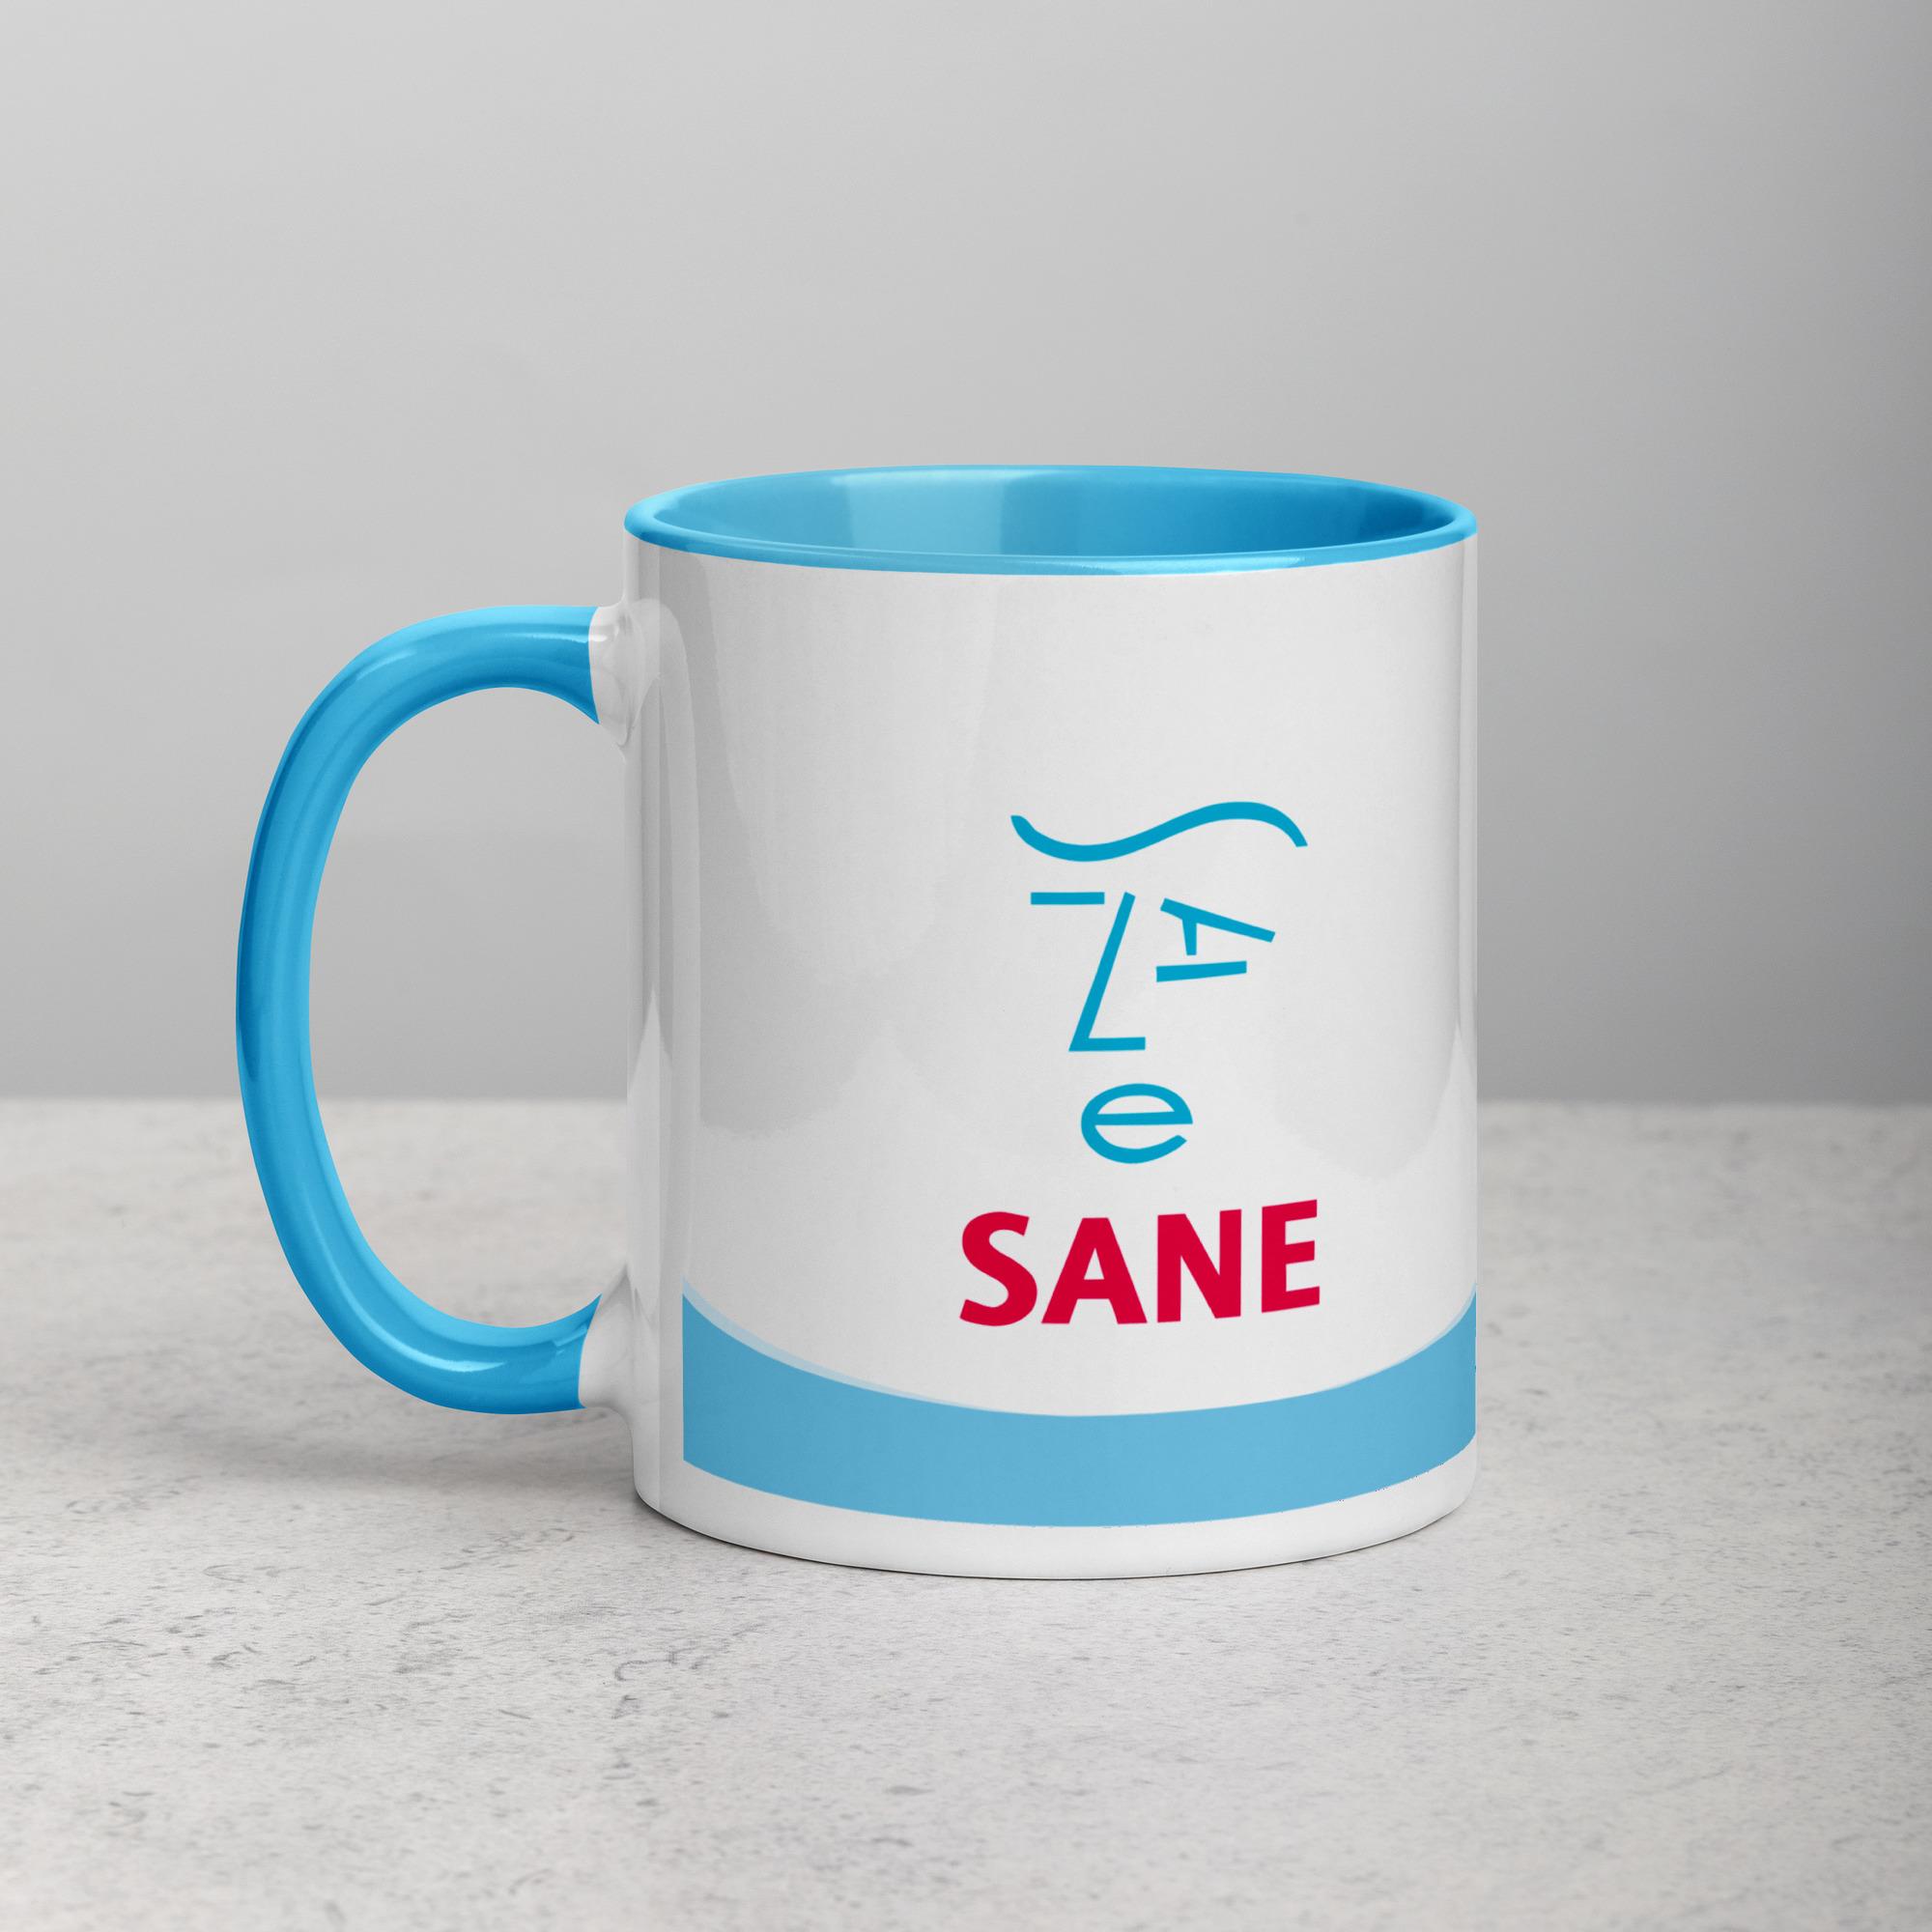 SANE Mug - Blue